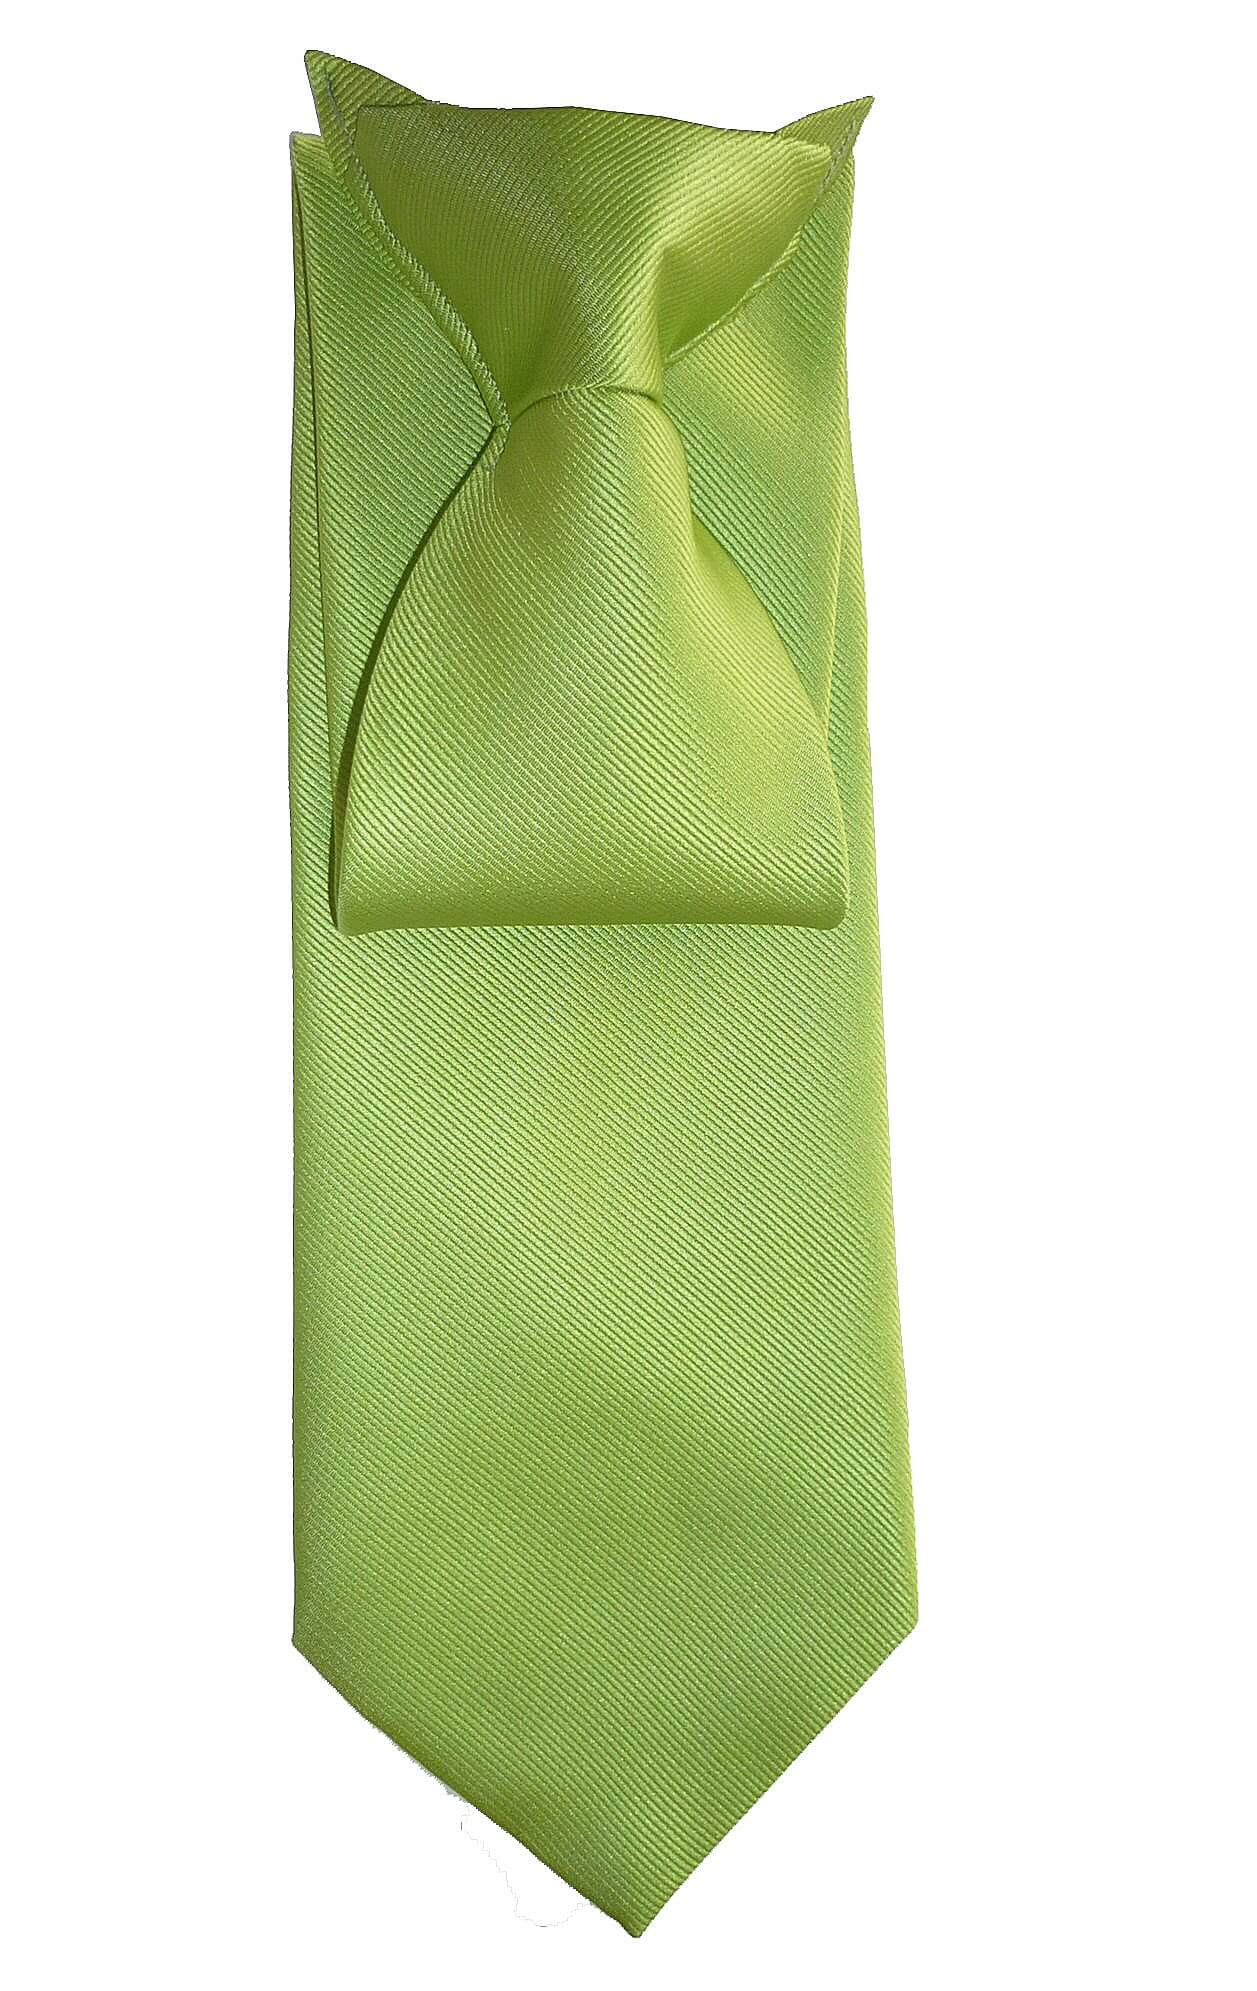 Voorbeeld stropdas met clip